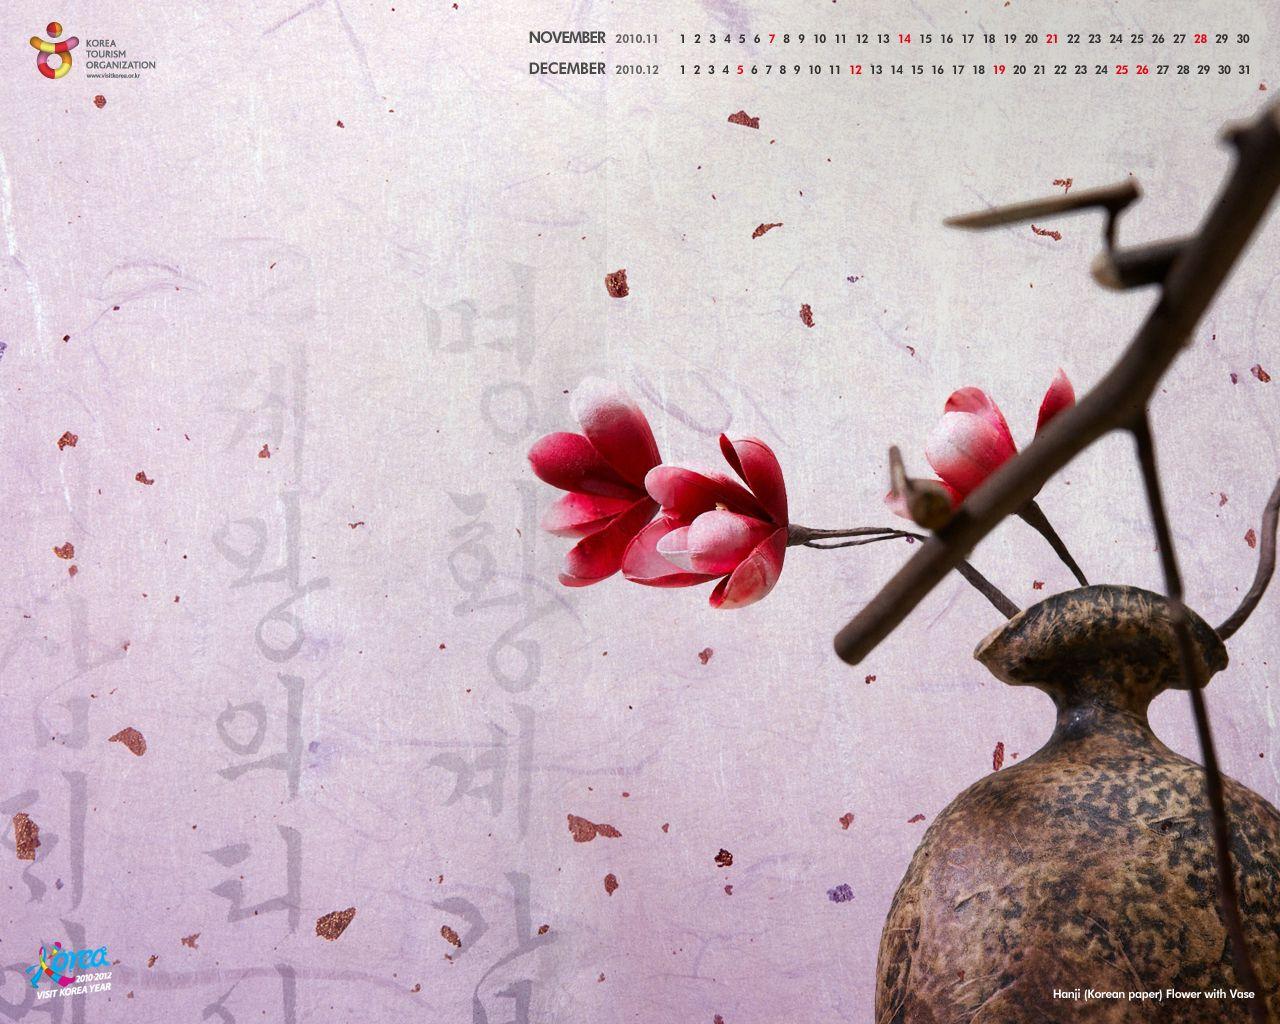 Official Site Of Korea Tourism Org.: Wallpaper_2010_NOV DEC